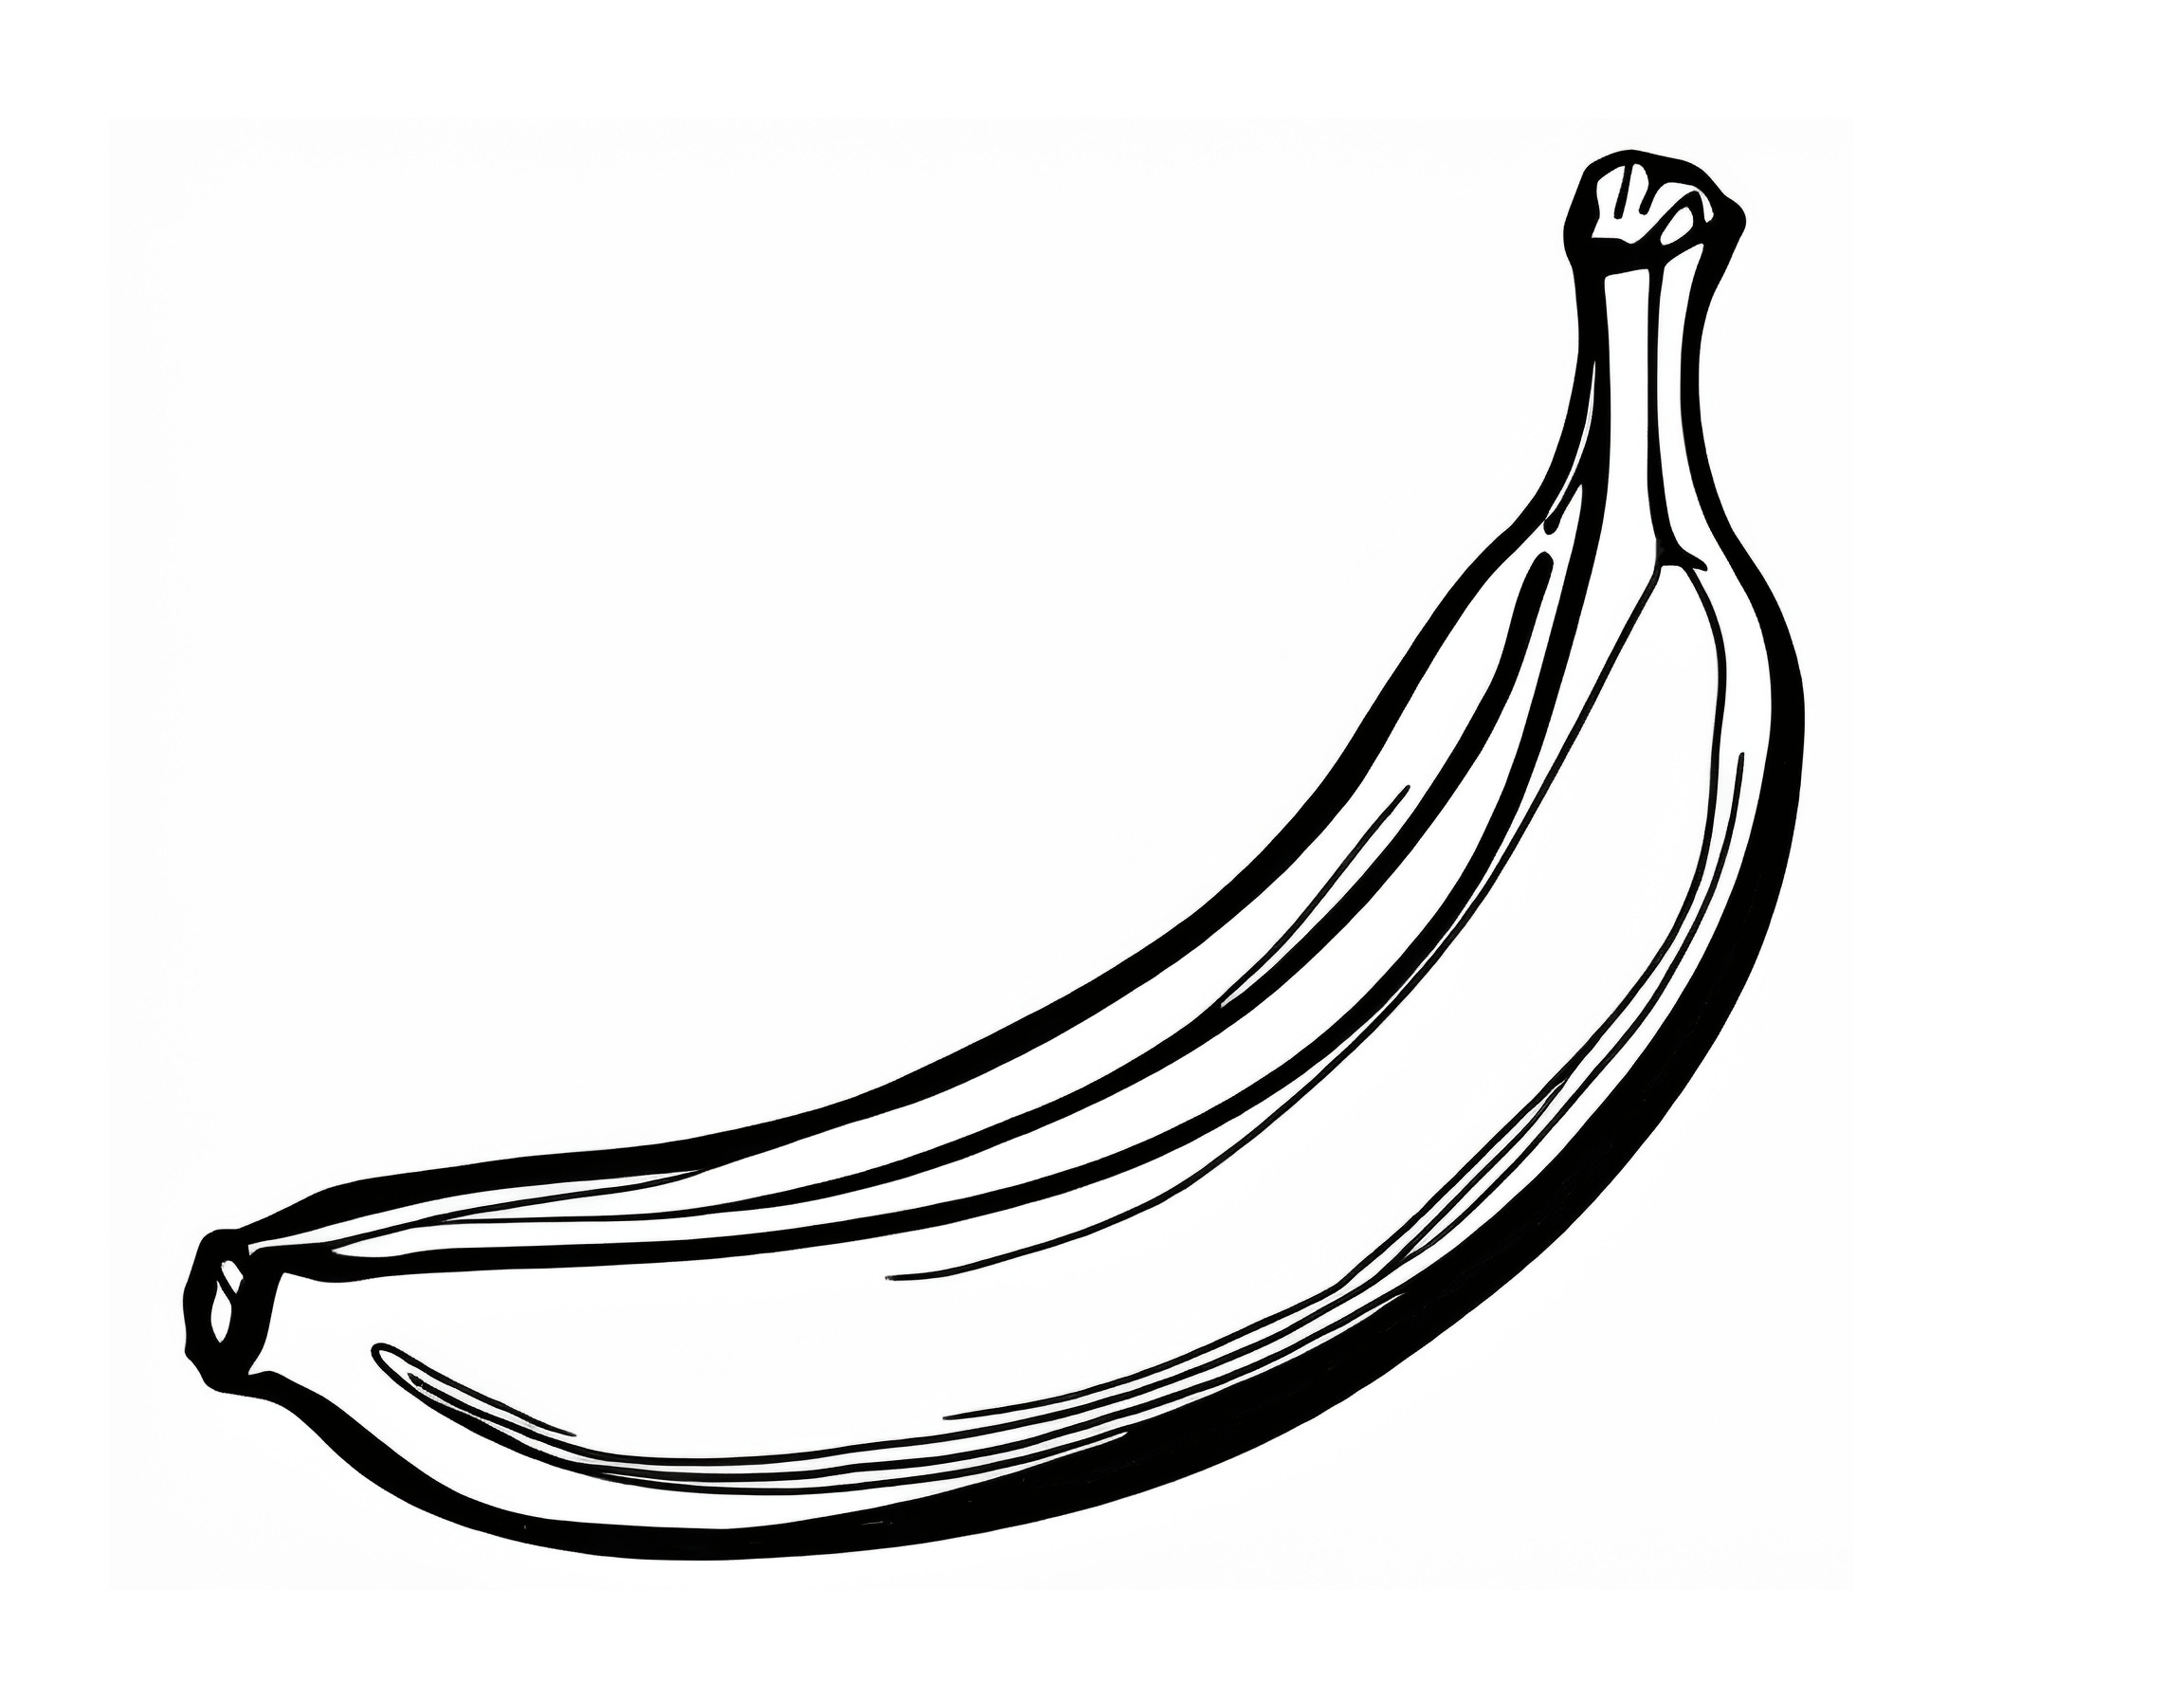 Dibujo de un plátano para colorear